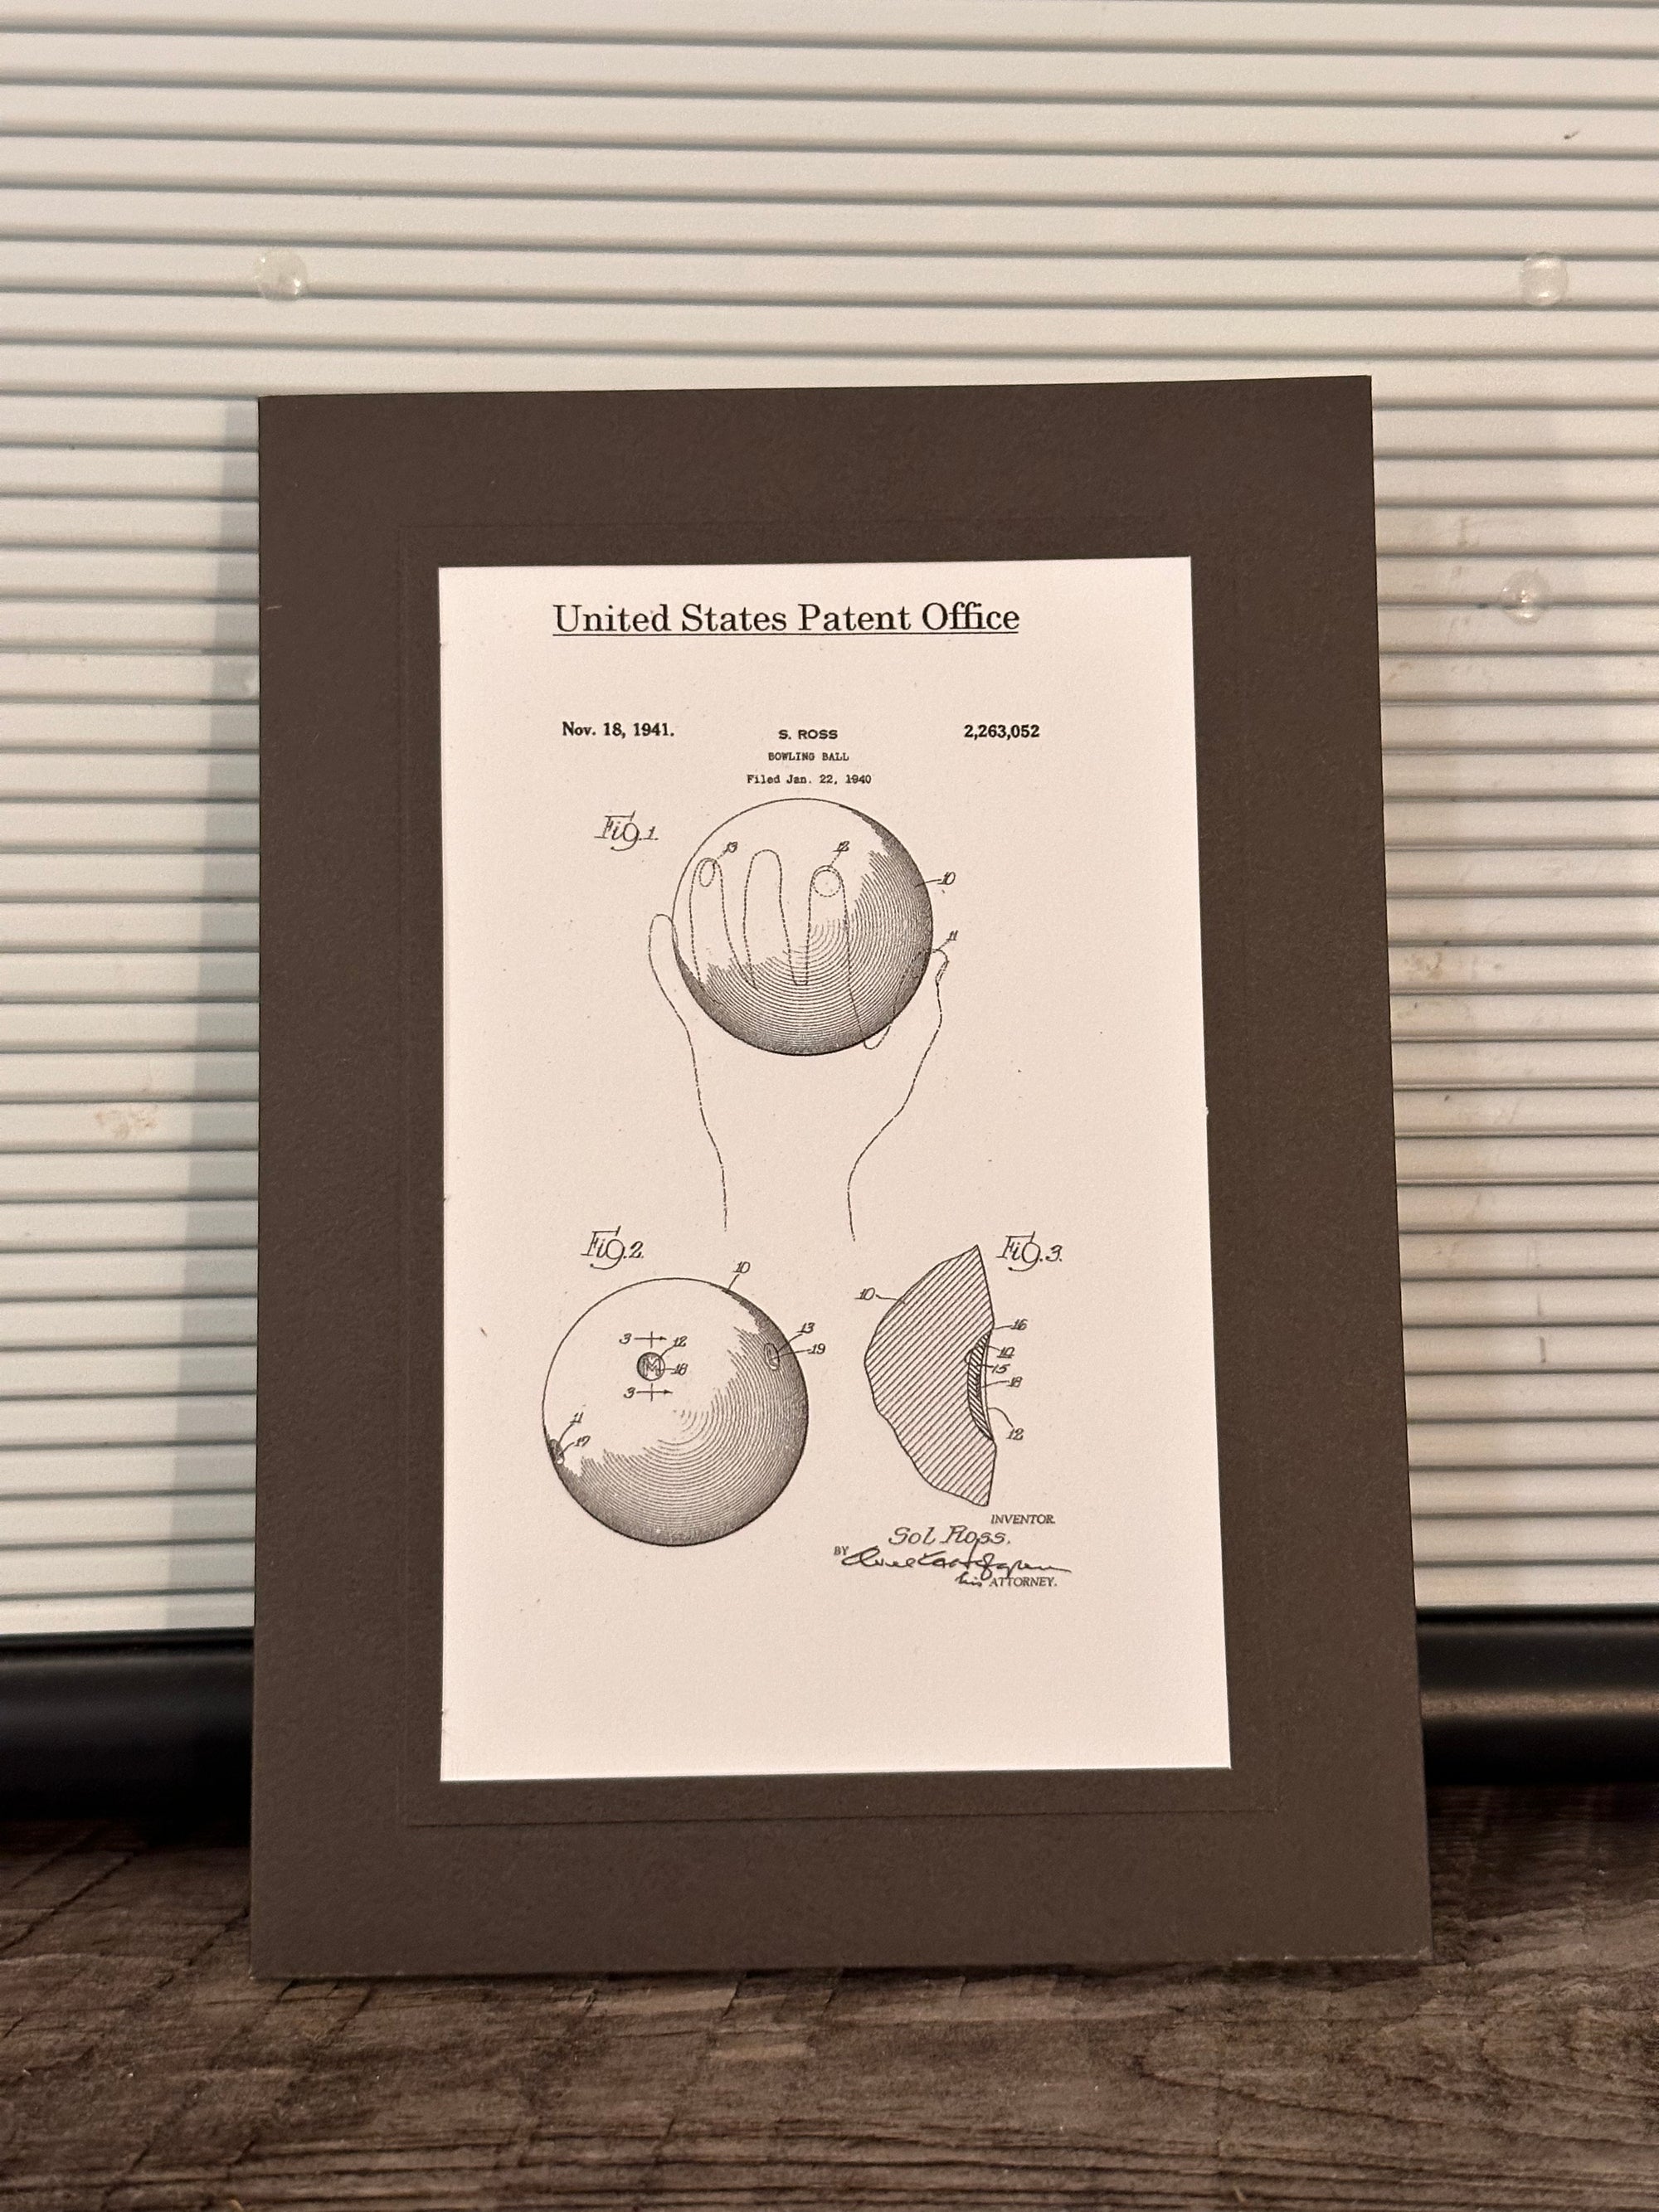 Candlepin bowling ball patent card